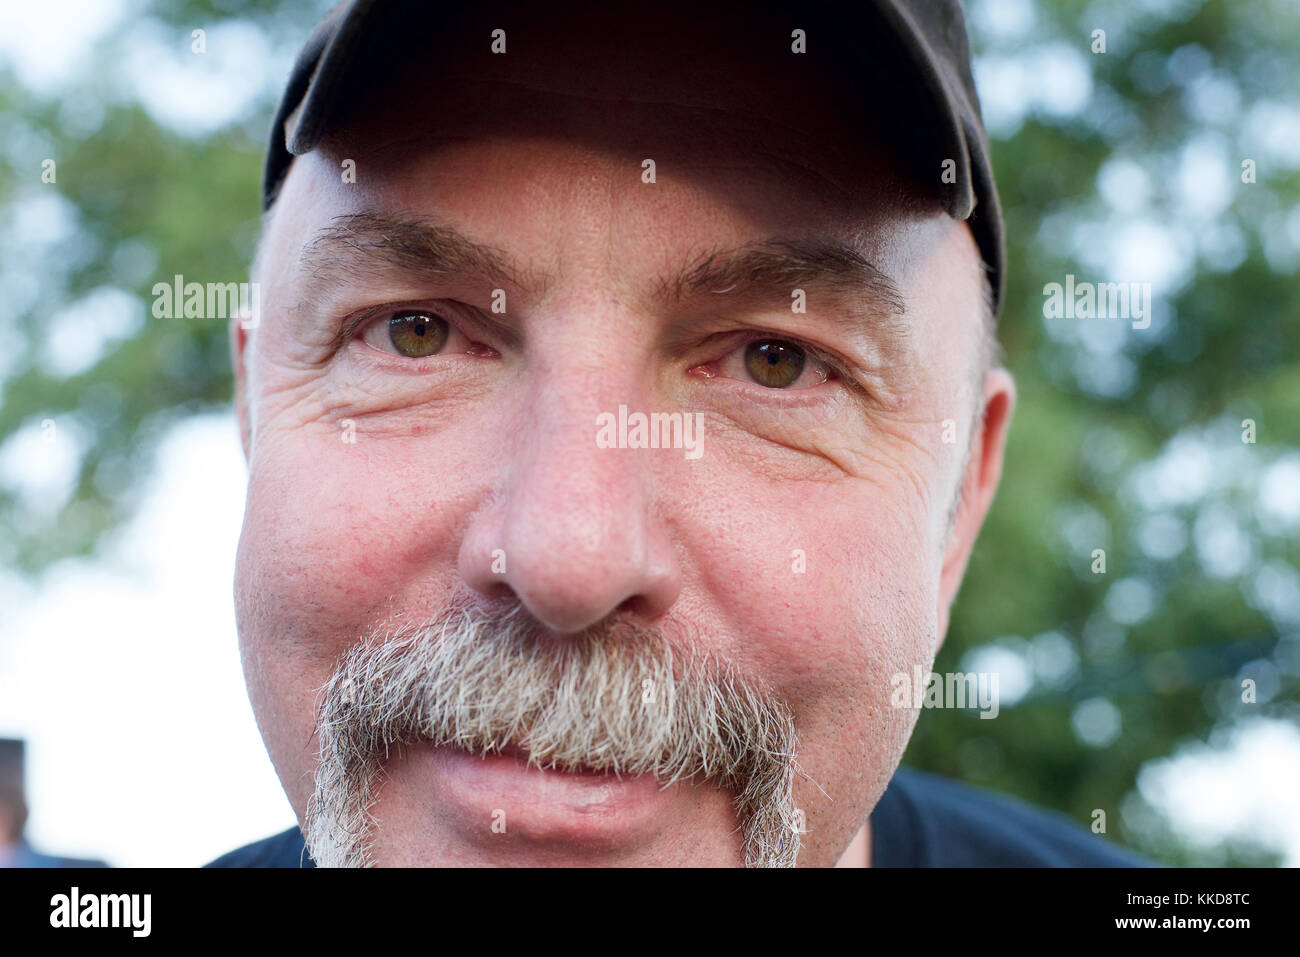 Chiudere su di una faccia di un uomo con un manubrio di baffi Foto Stock